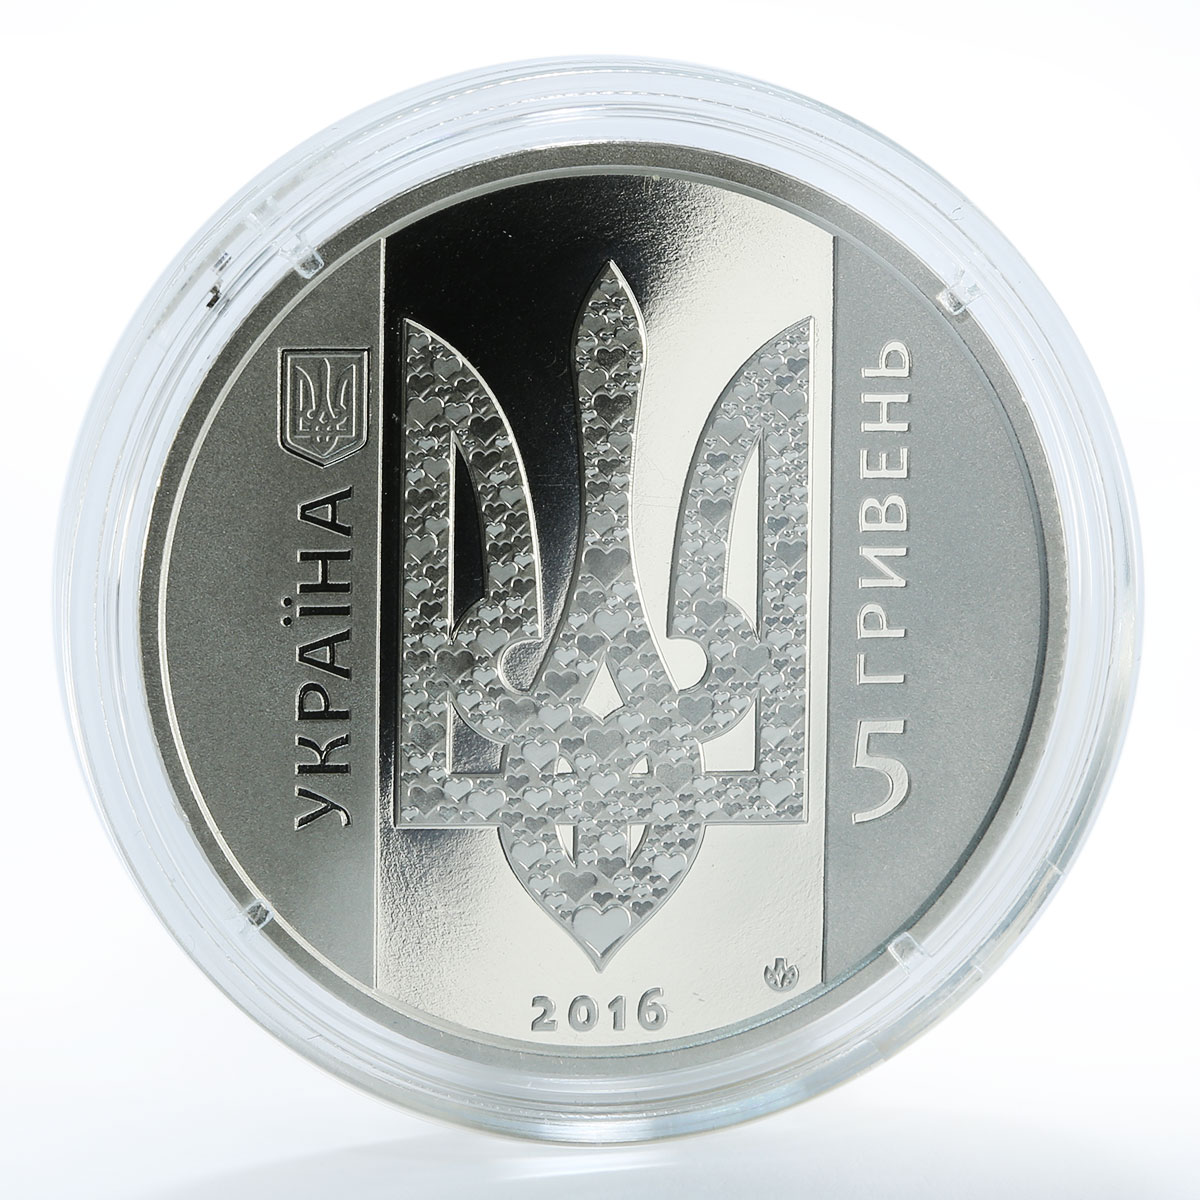 Ukraine 5 hryvnia Ukraine Begins with You volunteer heart color nickel coin 2016